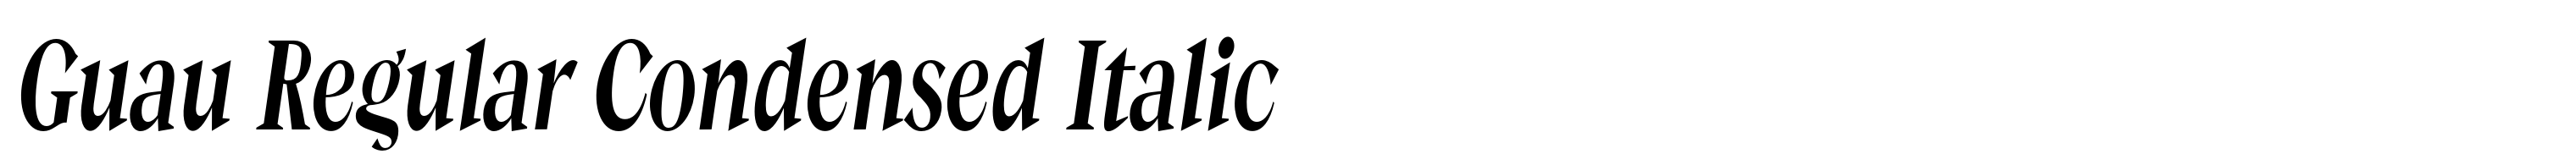 Guau Regular Condensed Italic